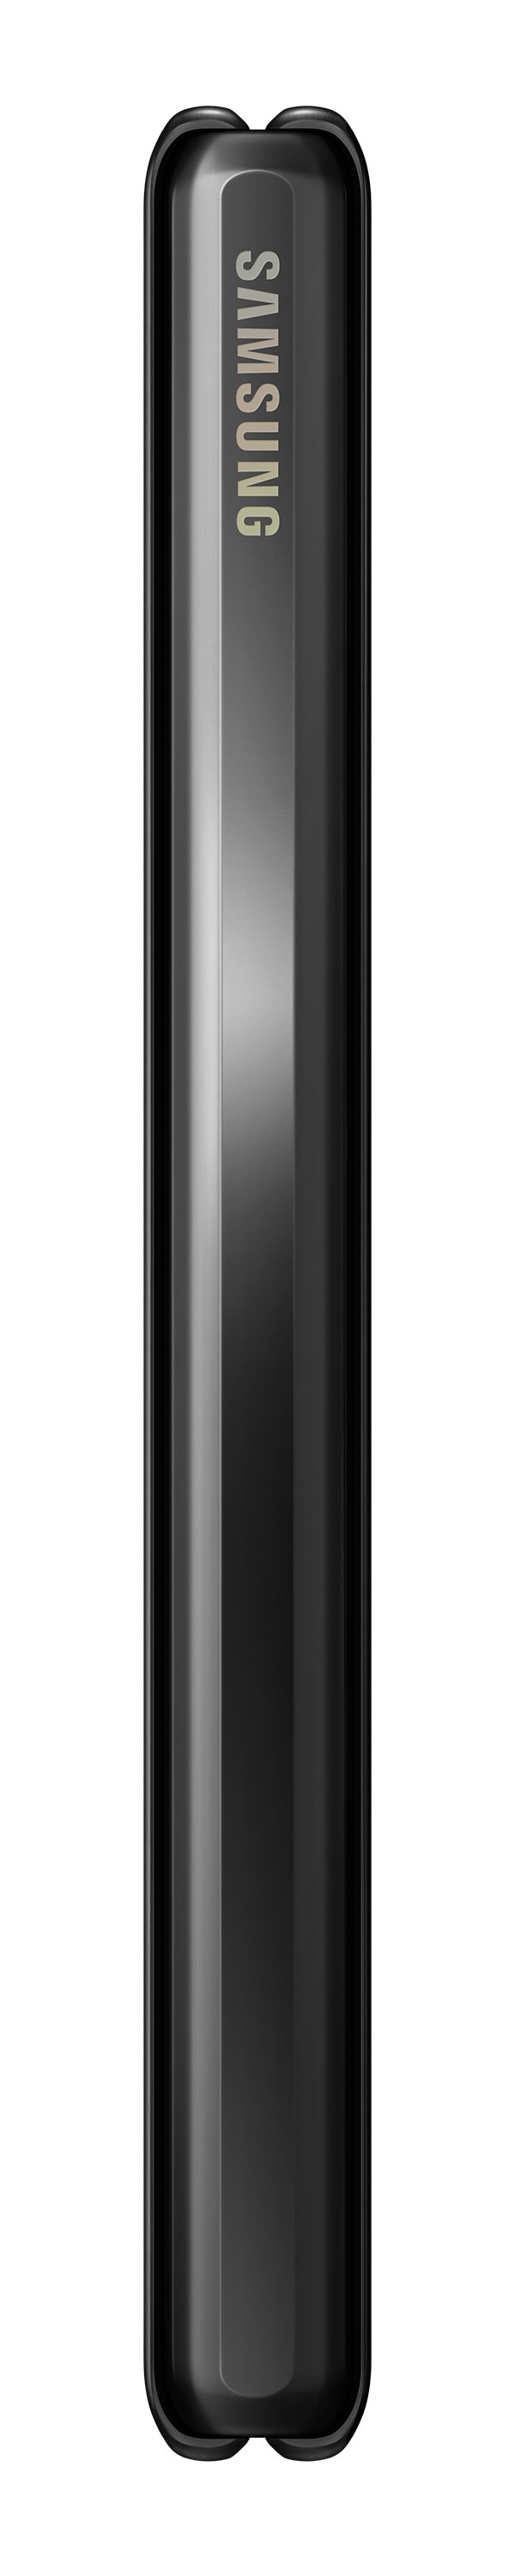 Samsung Galaxy Fold Smartphone 512GB/12GB LTE Cosmos Black